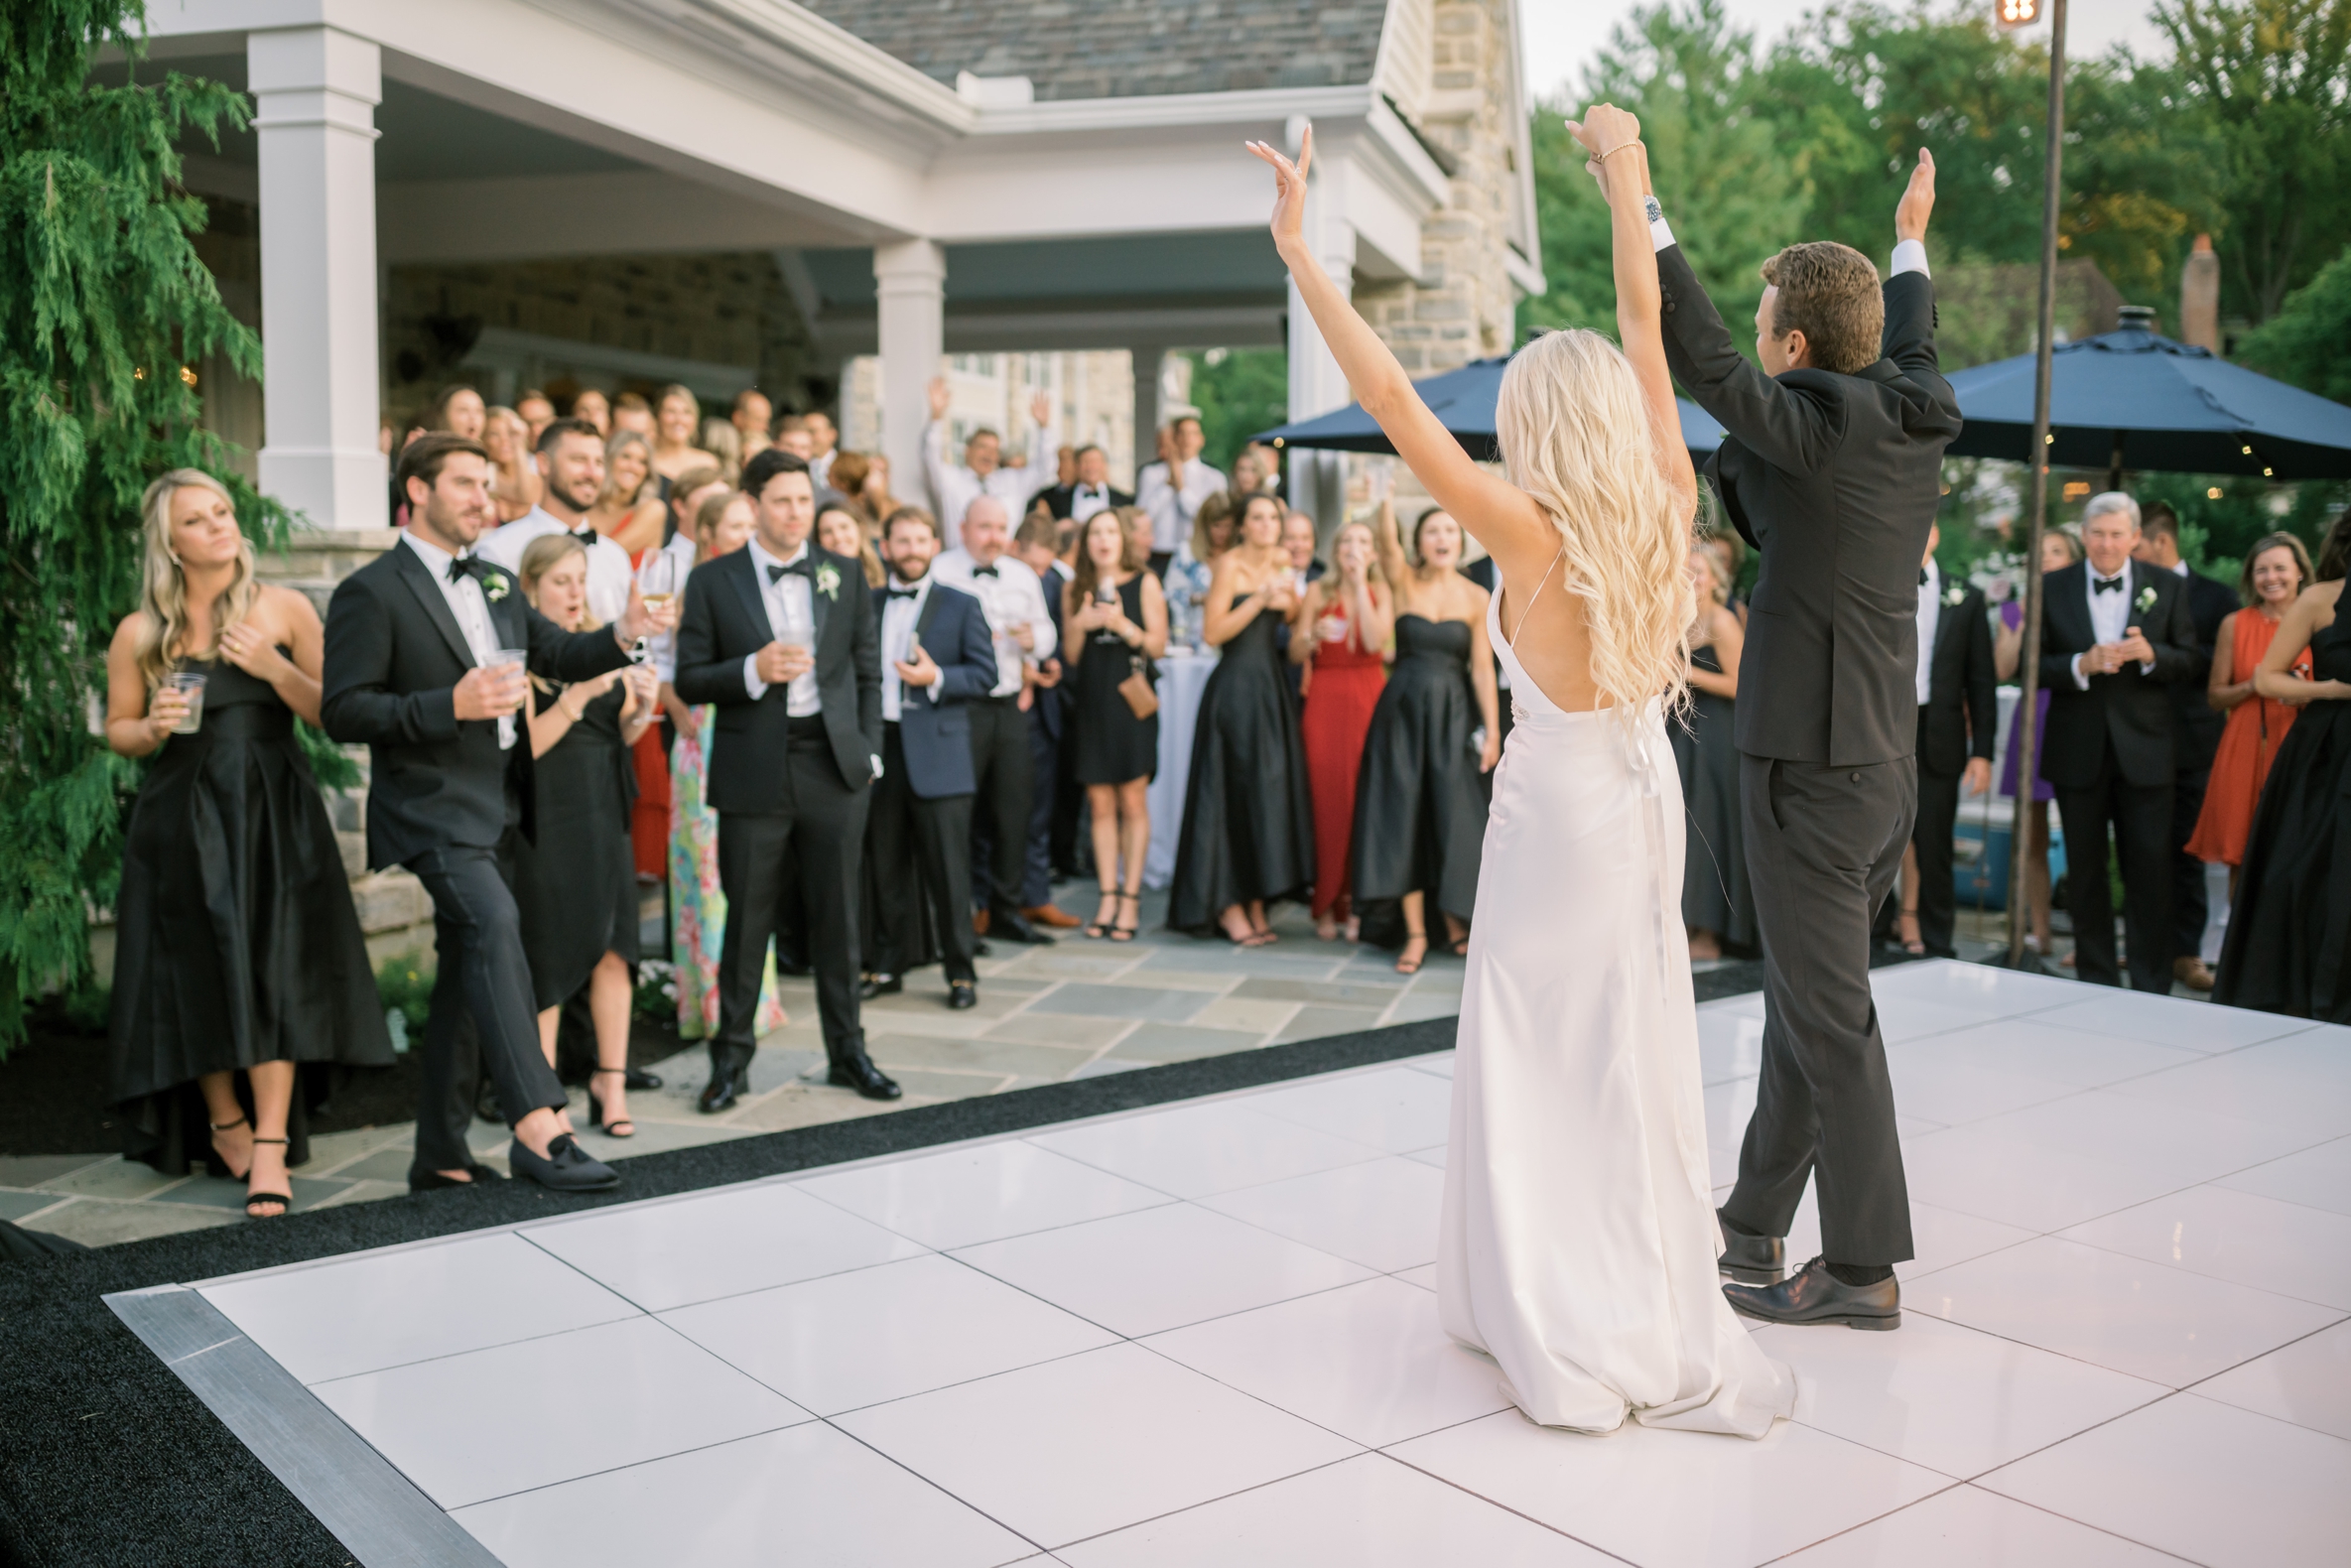 Outdoor first dance at wedding in Cincinnati